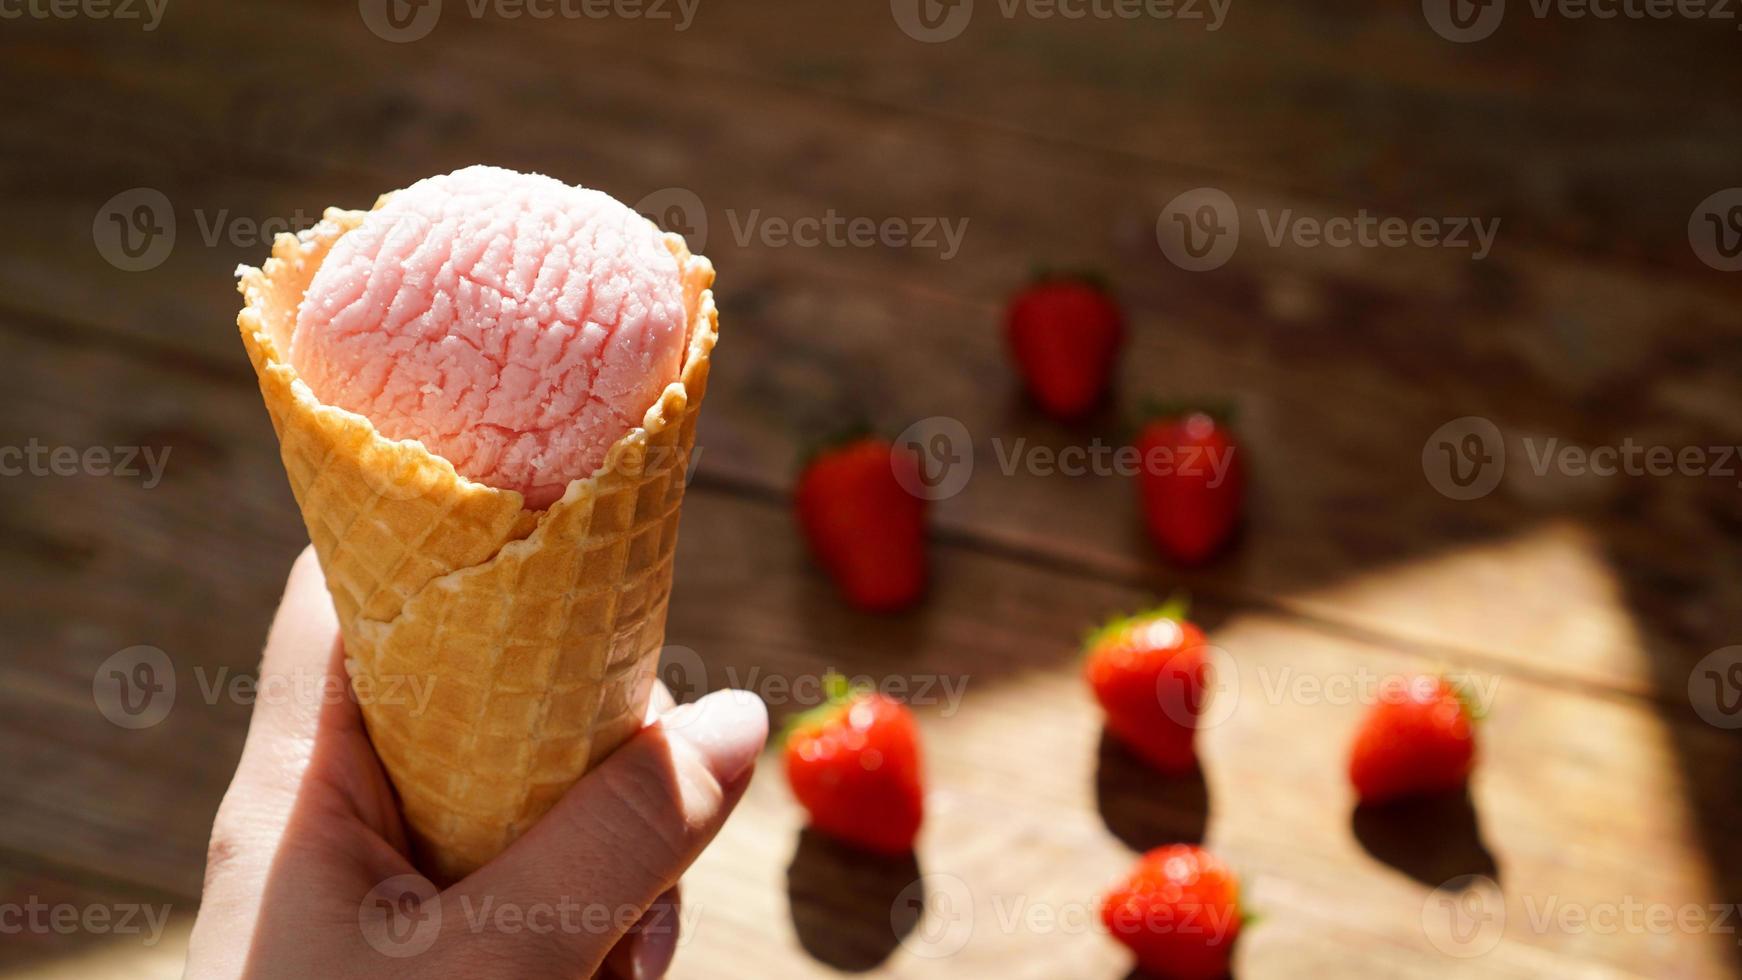 immagine ravvicinata della mano di una donna che tiene il gelato al lampone foto